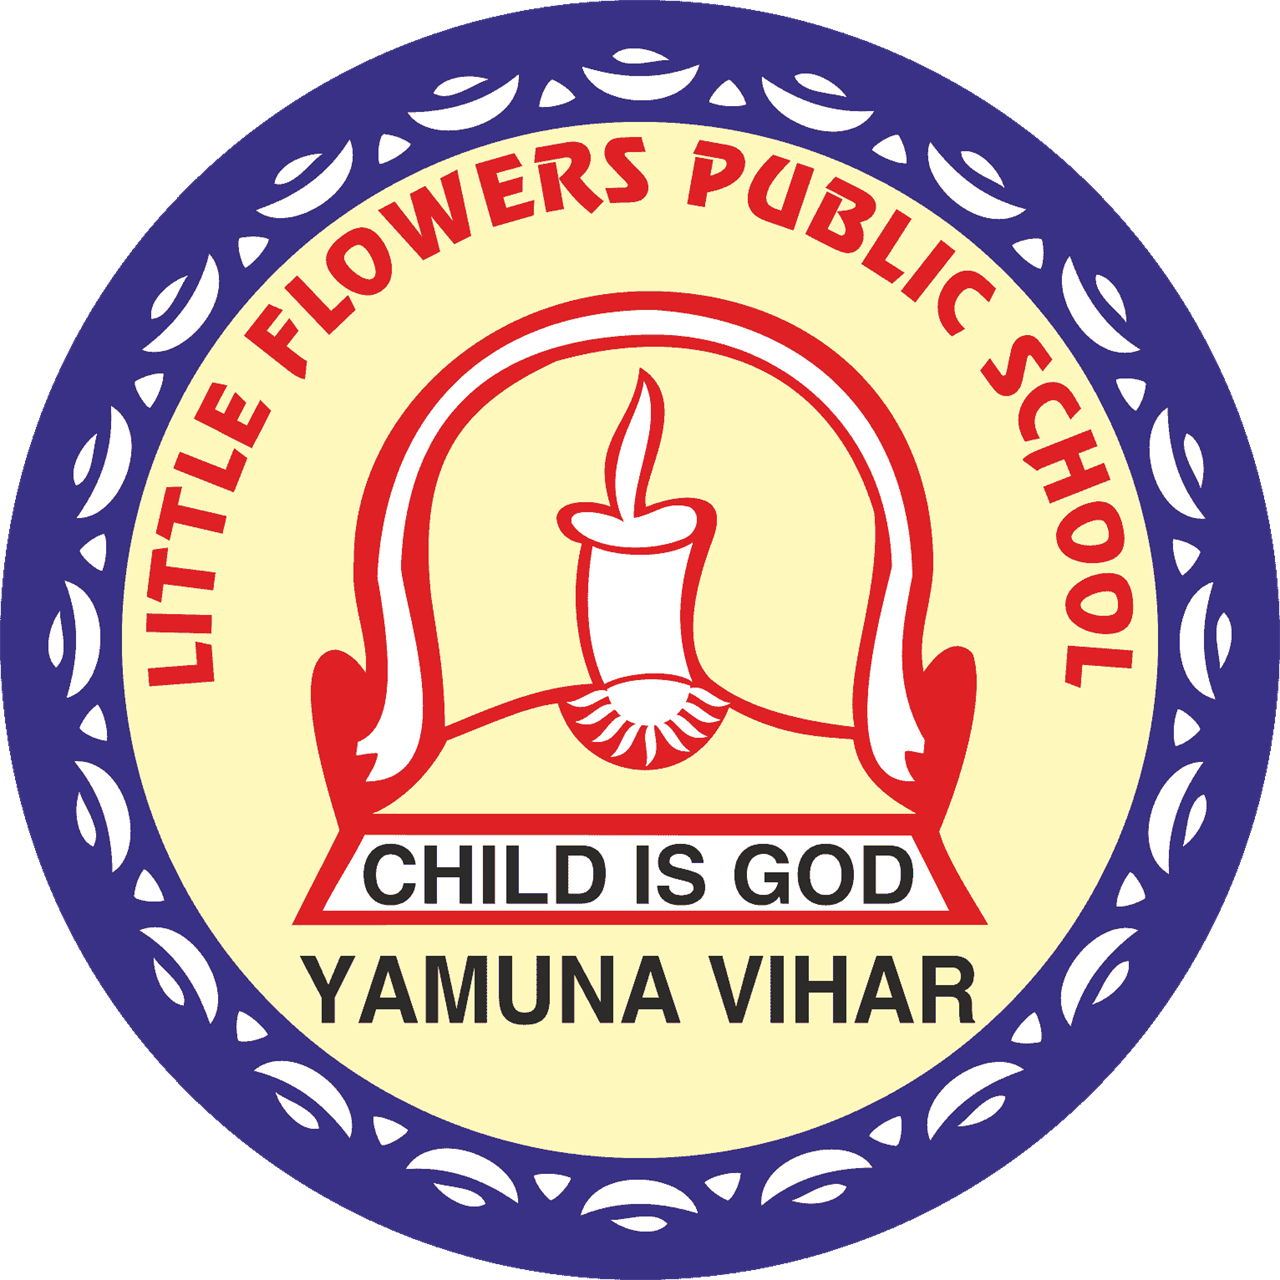 Little Flowers Public School